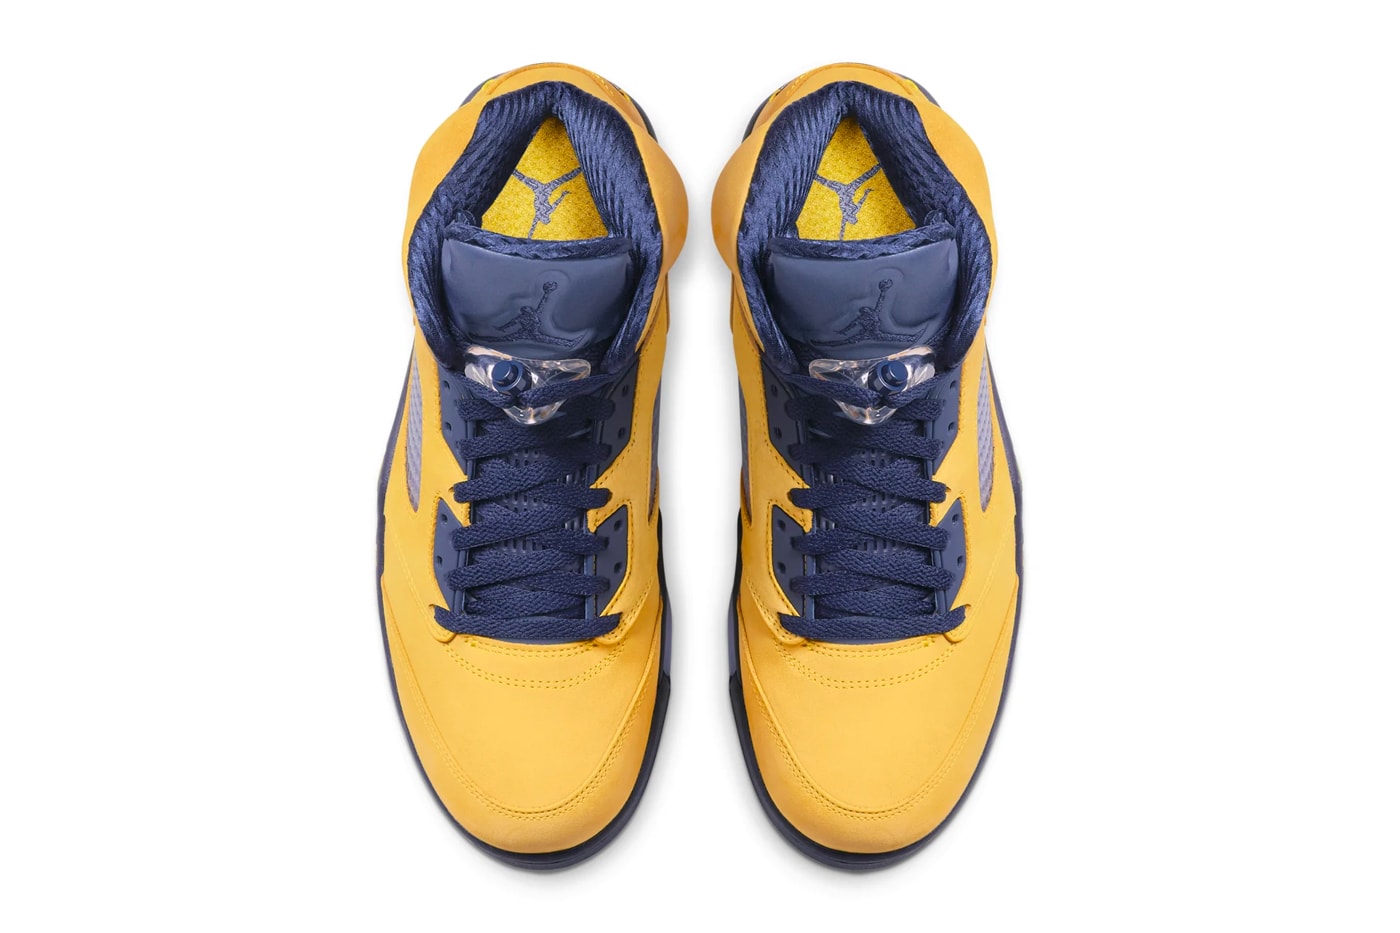 Air Jordan 5 Michigan Inspire Release Michigan Wolverines NBA Michael Jordan Shoes Sneakers Kicks Trailers Basketball college AJ5 Amarillo Navy